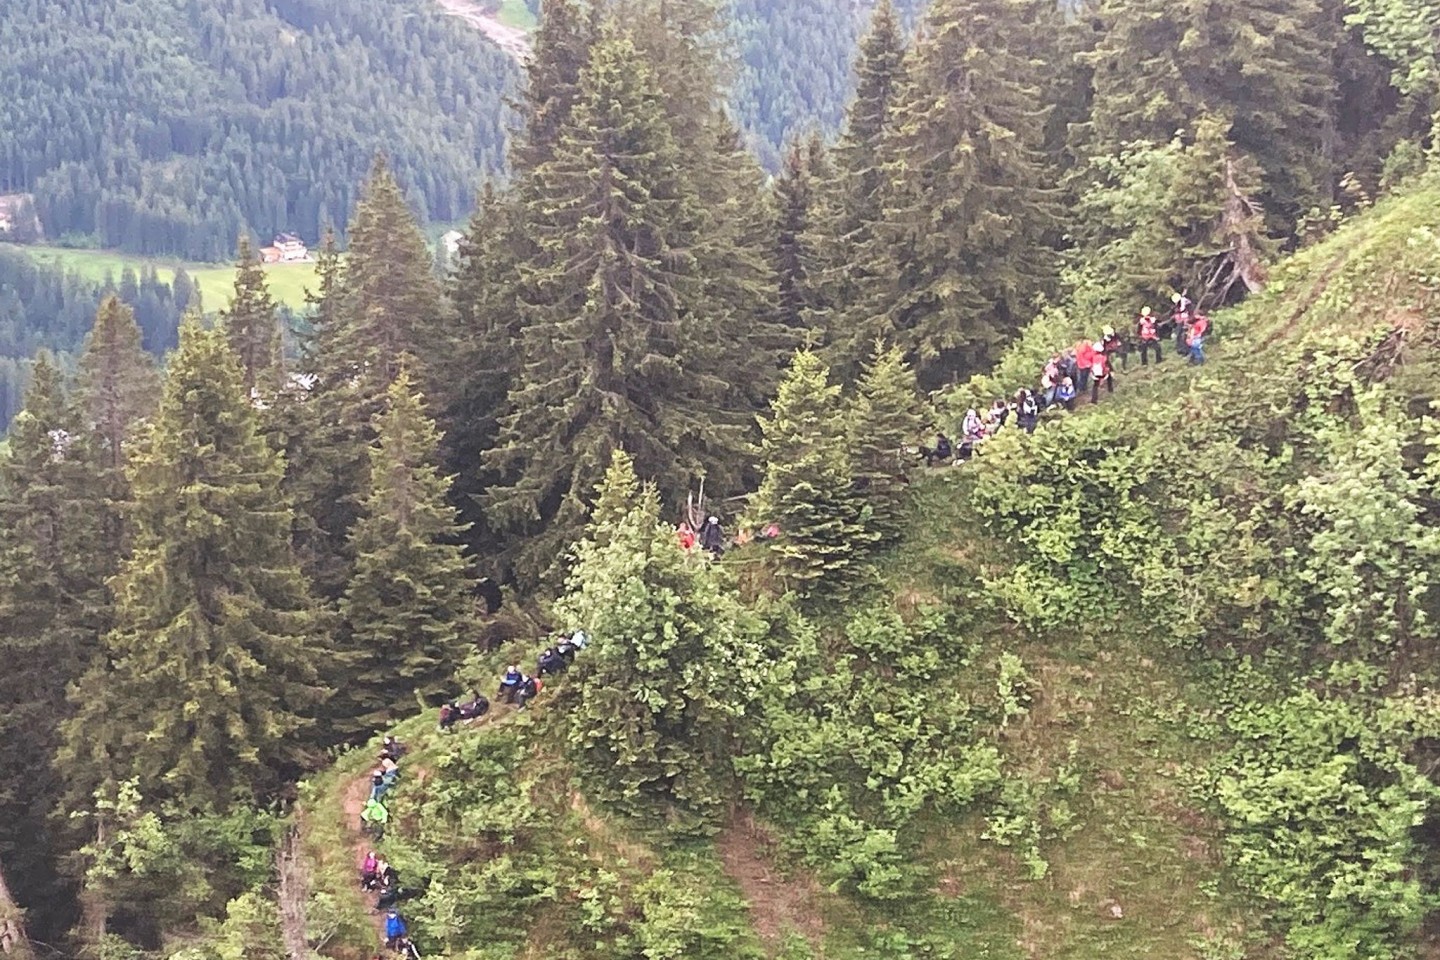 Schüler und eine Lehrergruppe im österreichischen Kleinwalsertal. Mehr als 100 Personen sind mit Hubschraubern aus Bergnot gerettet worden.